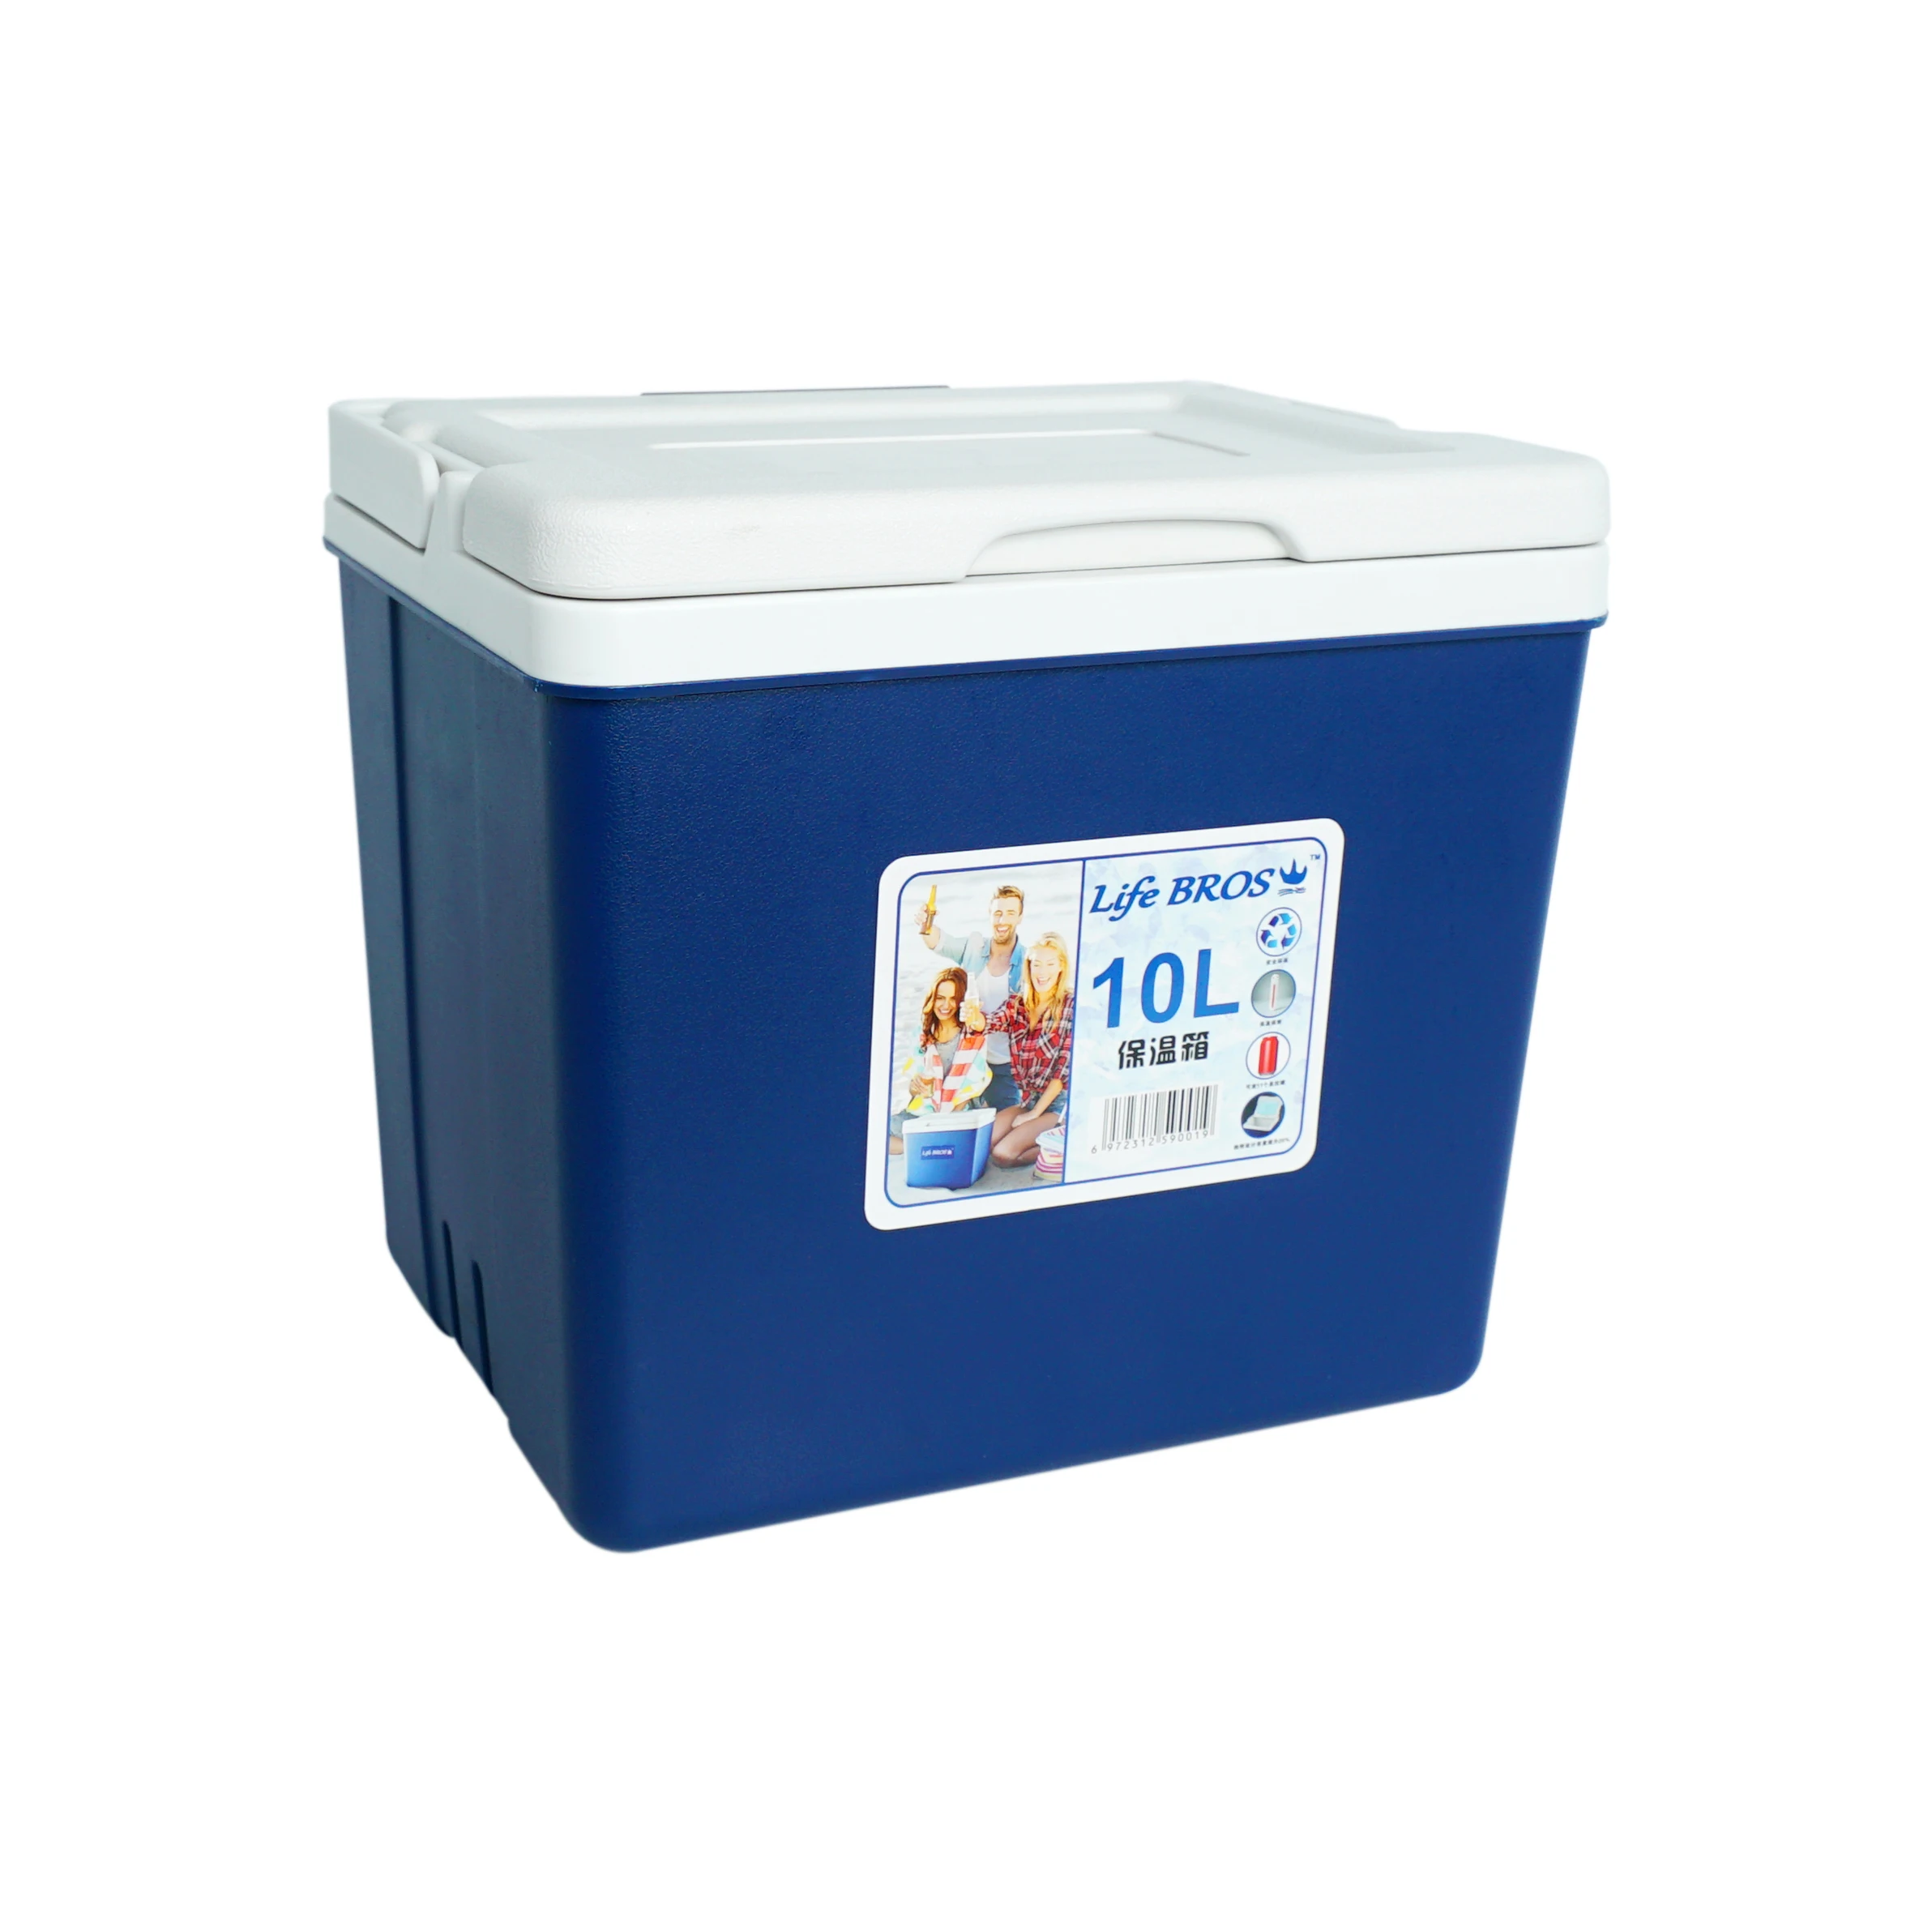 cooler box 10 liter